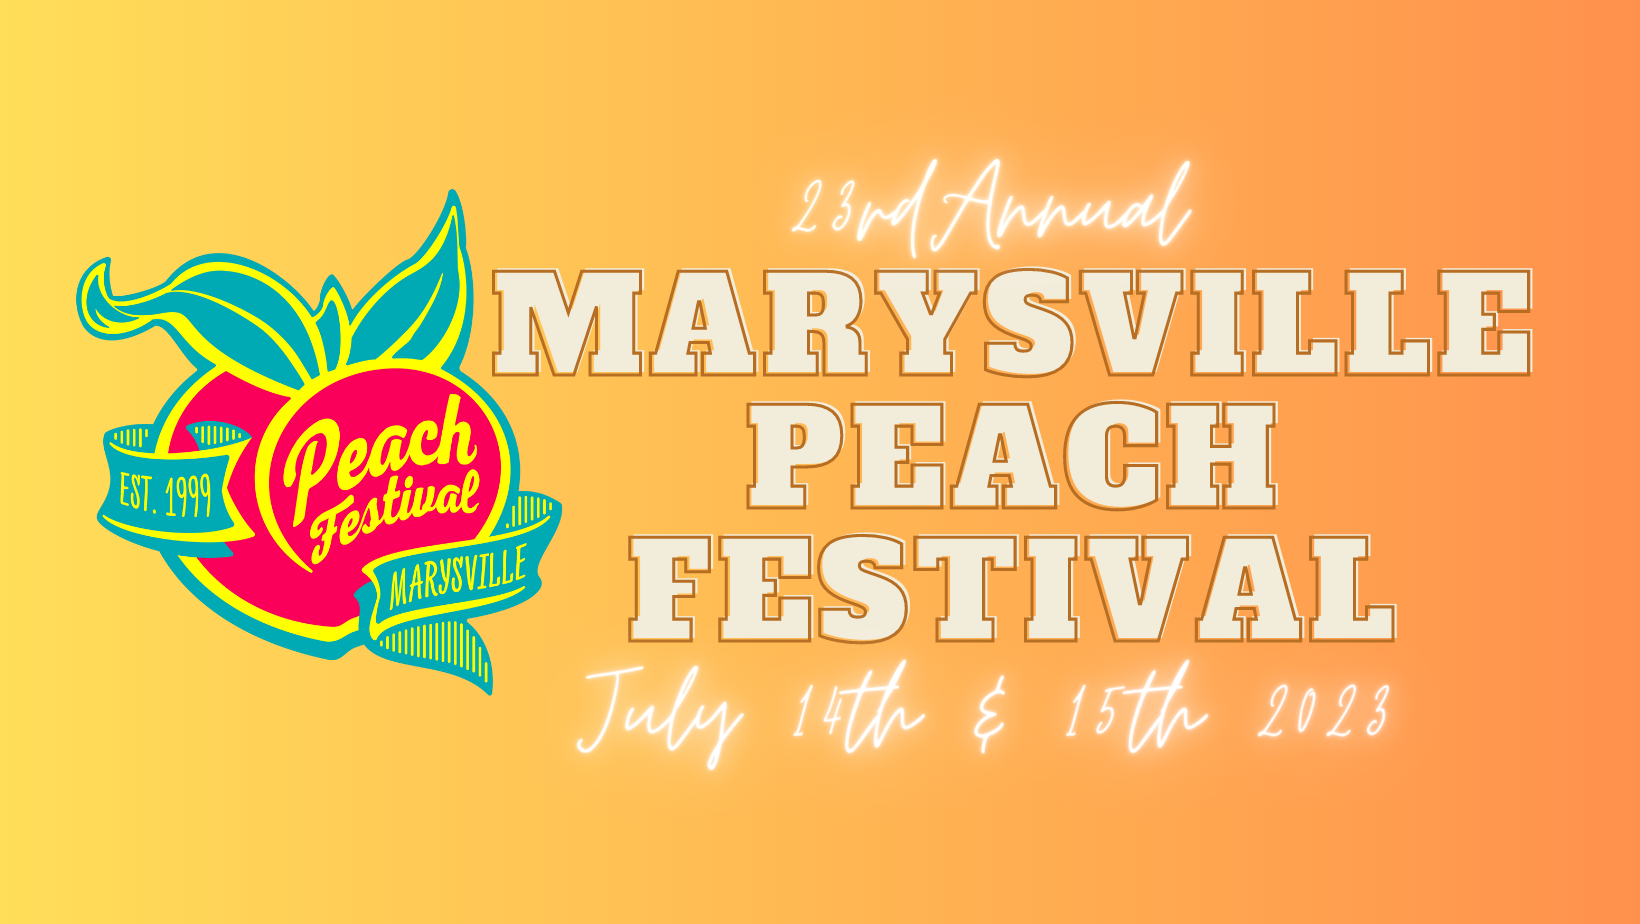 23rd Annual Marysville Peach Festival Air1 Worship Music